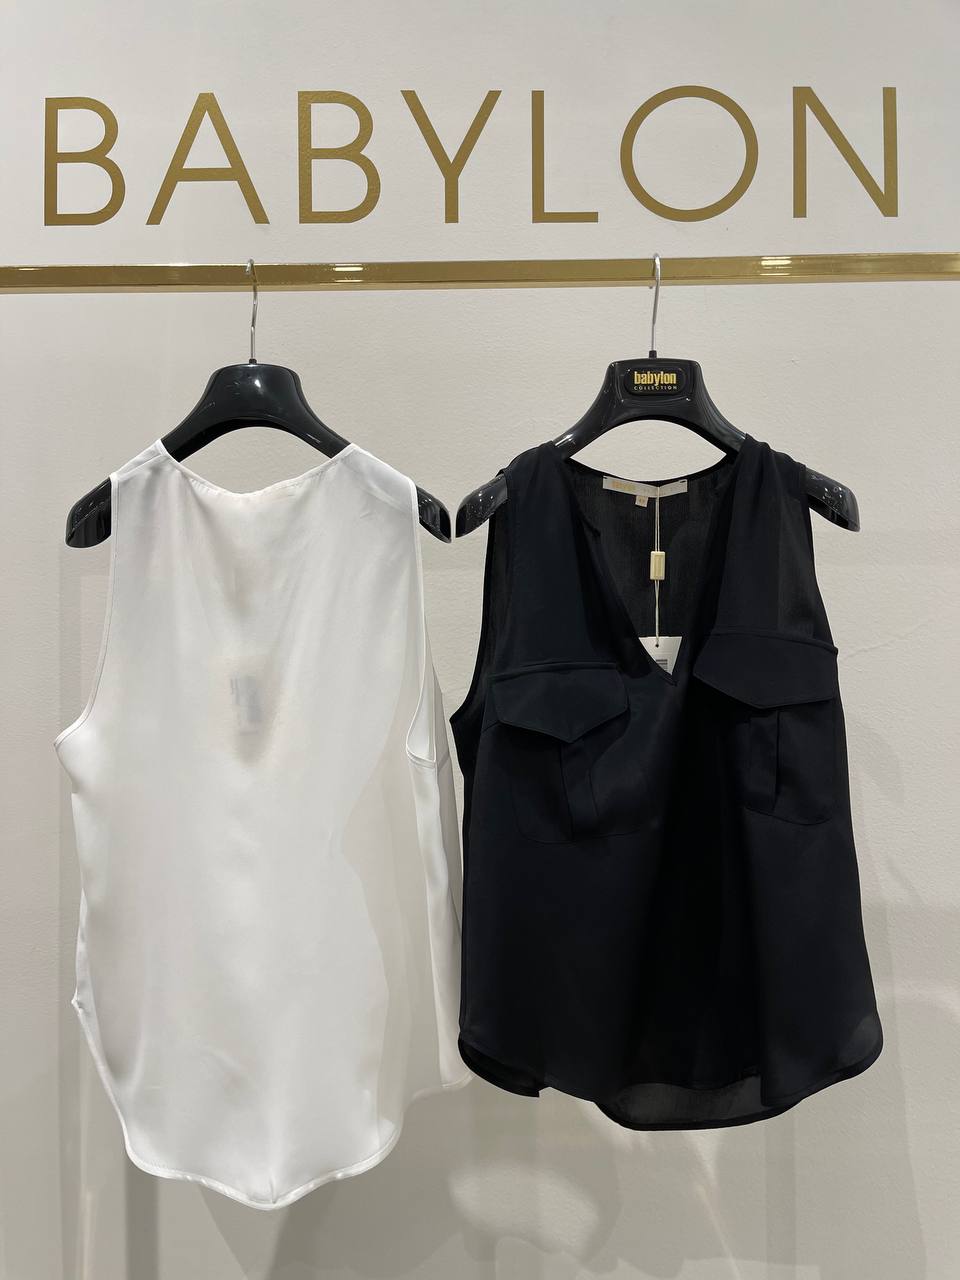 Итальянская одежда, бренд Babylon, арт. 73262208